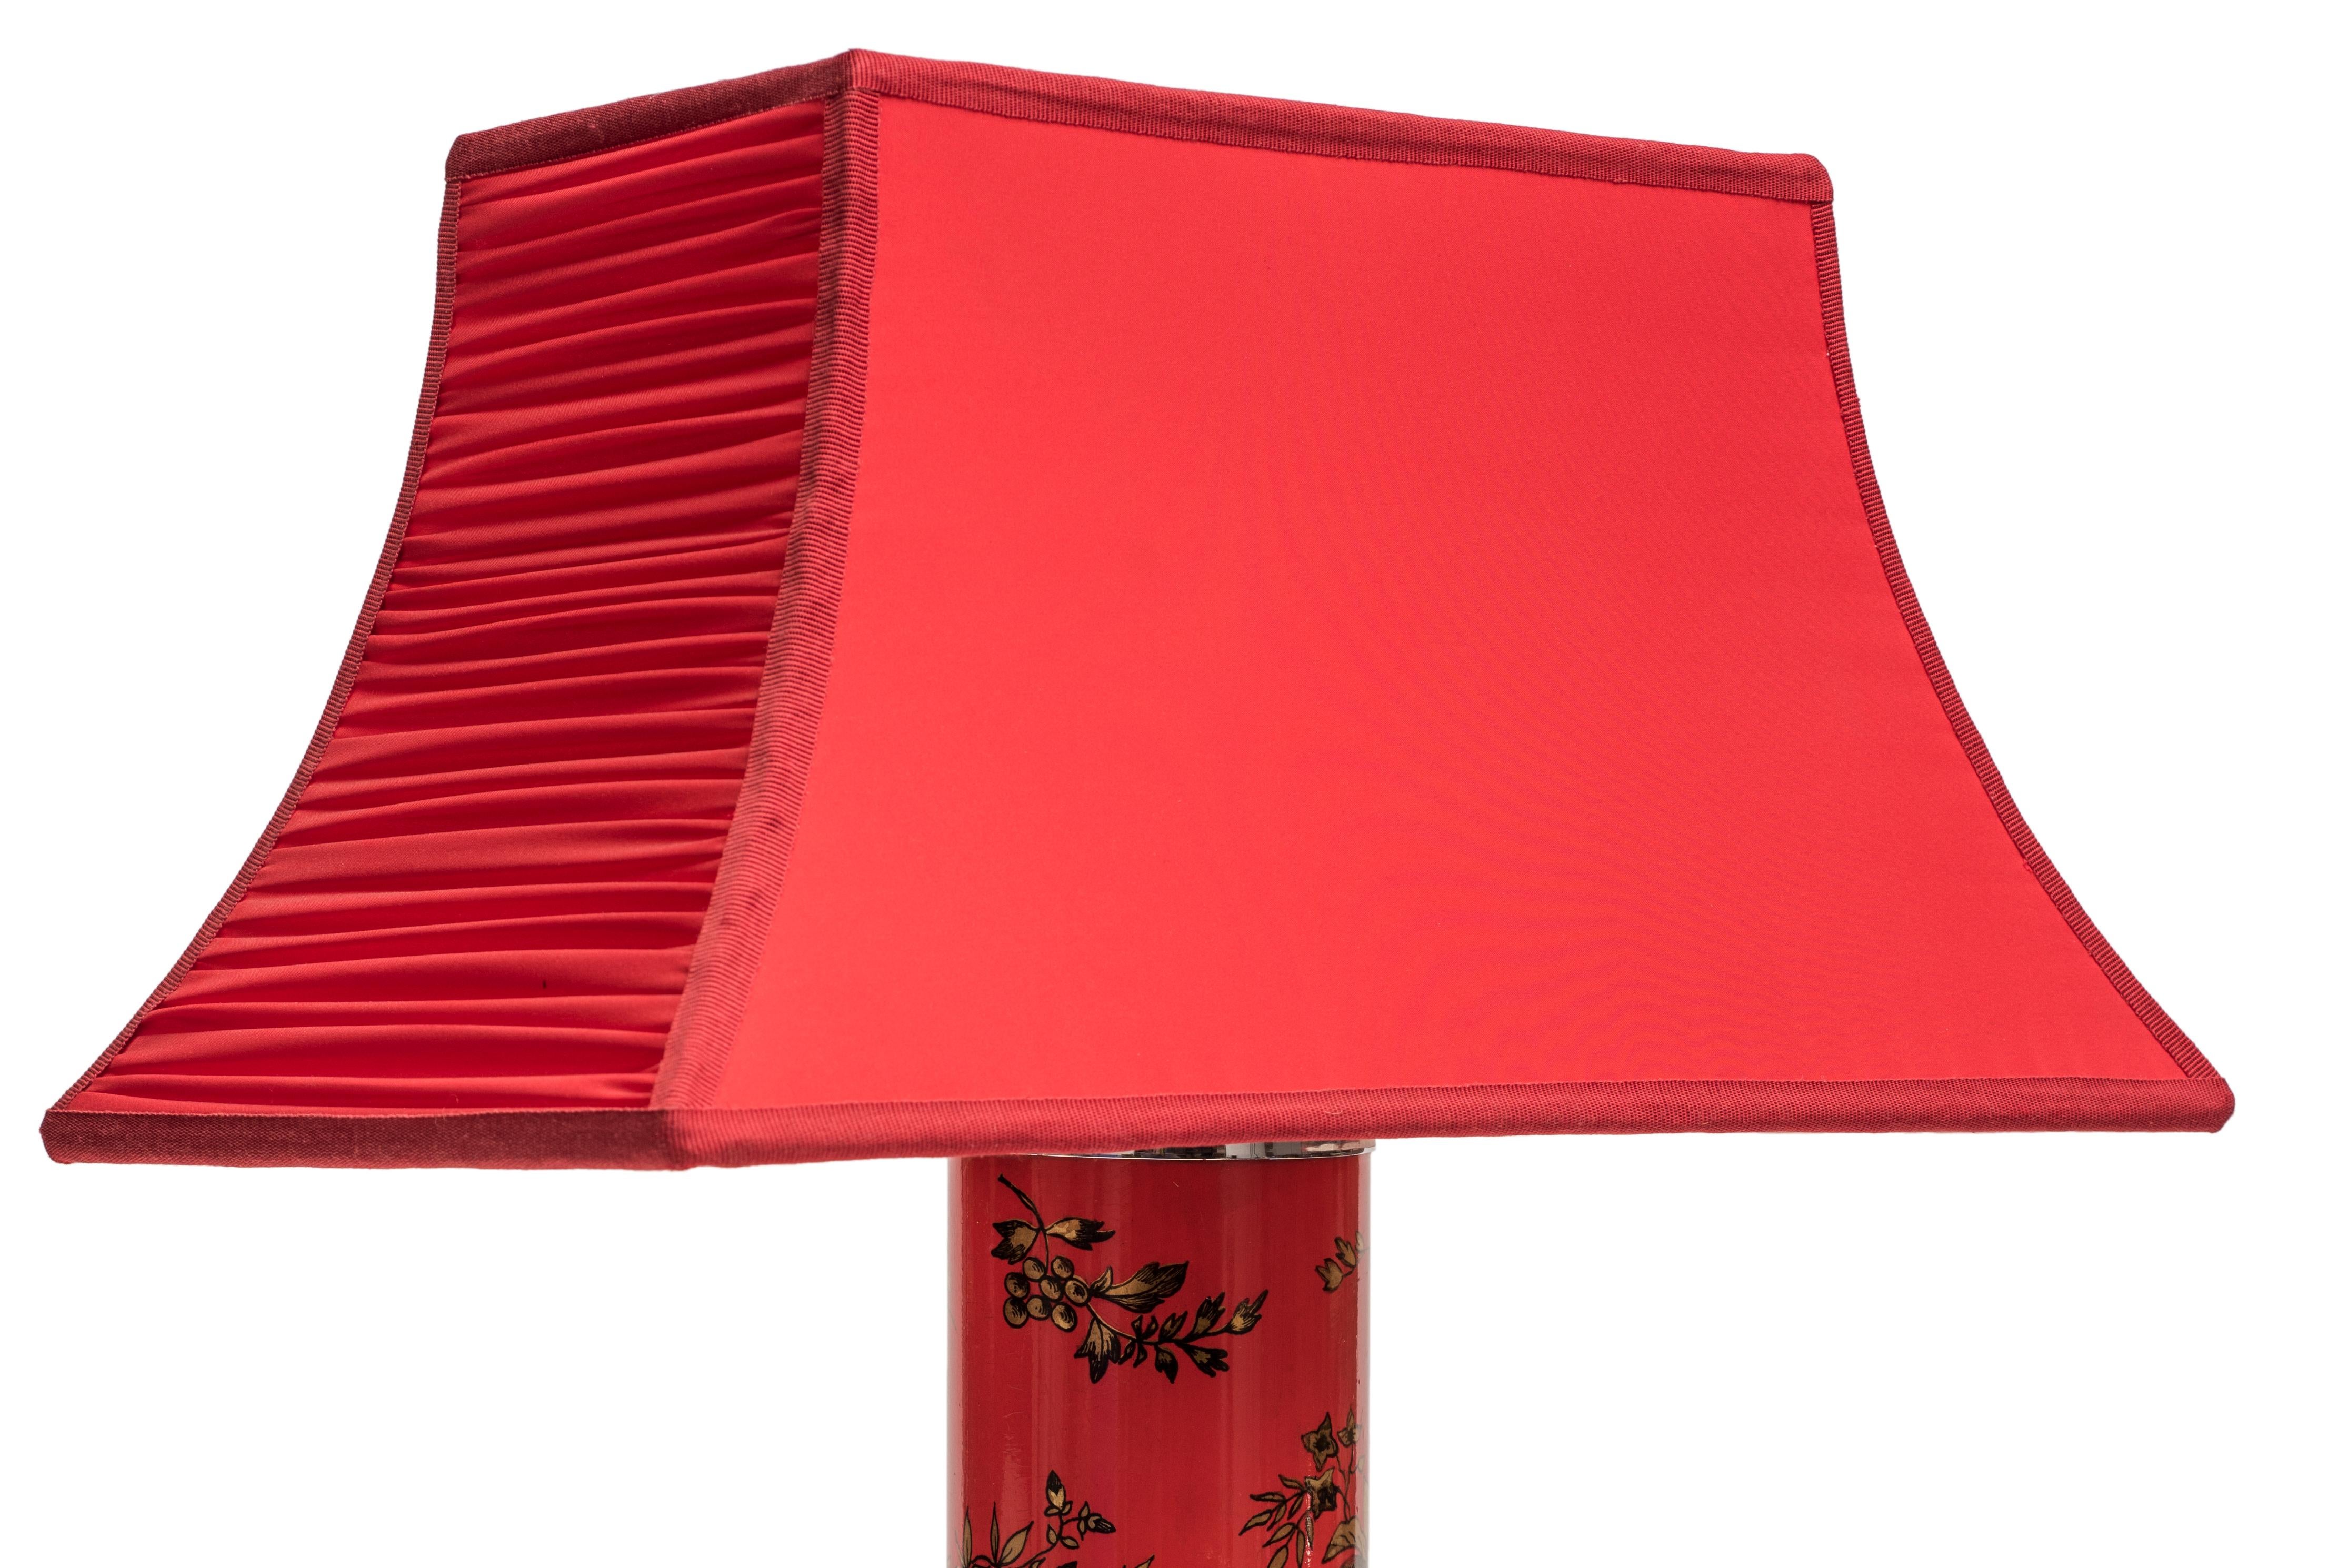 Rote Vintage-Lampe von Piero Fornasetti, 1960er Jahre (Italienisch)